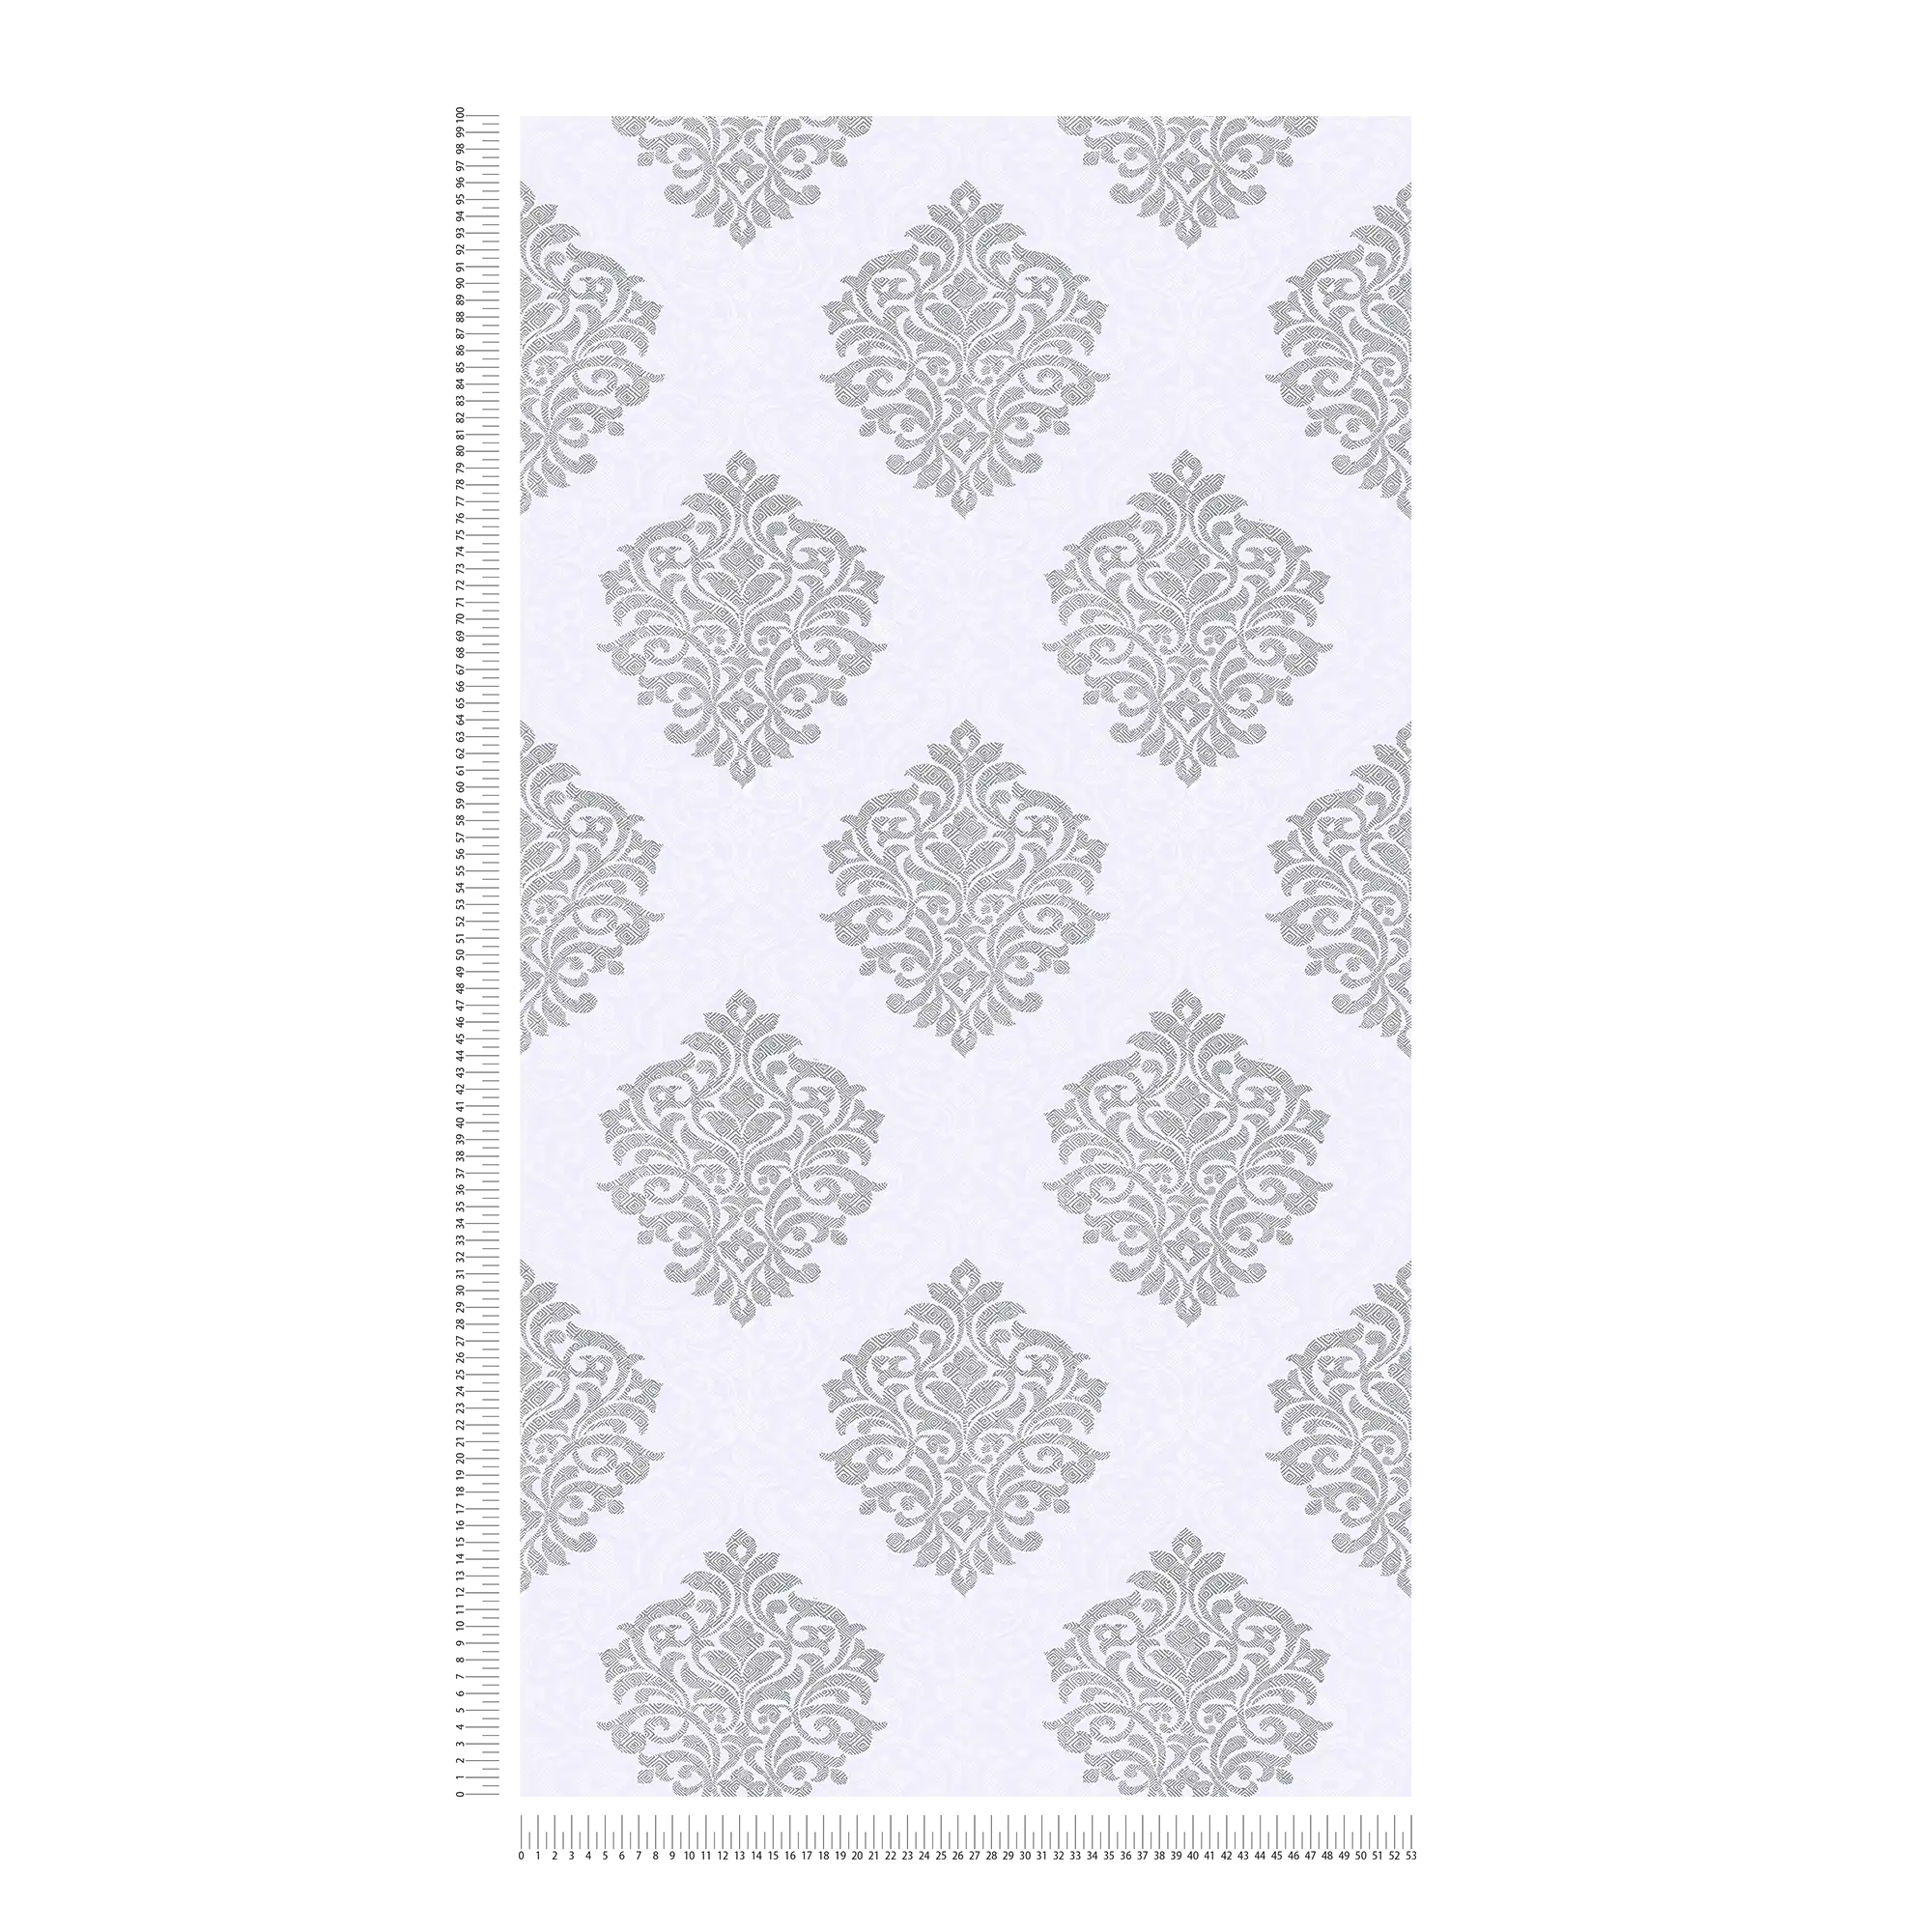             Florale Ornamenttapete Rautenmuster im Ethno-Stil – Grau, Weiß, Silber
        